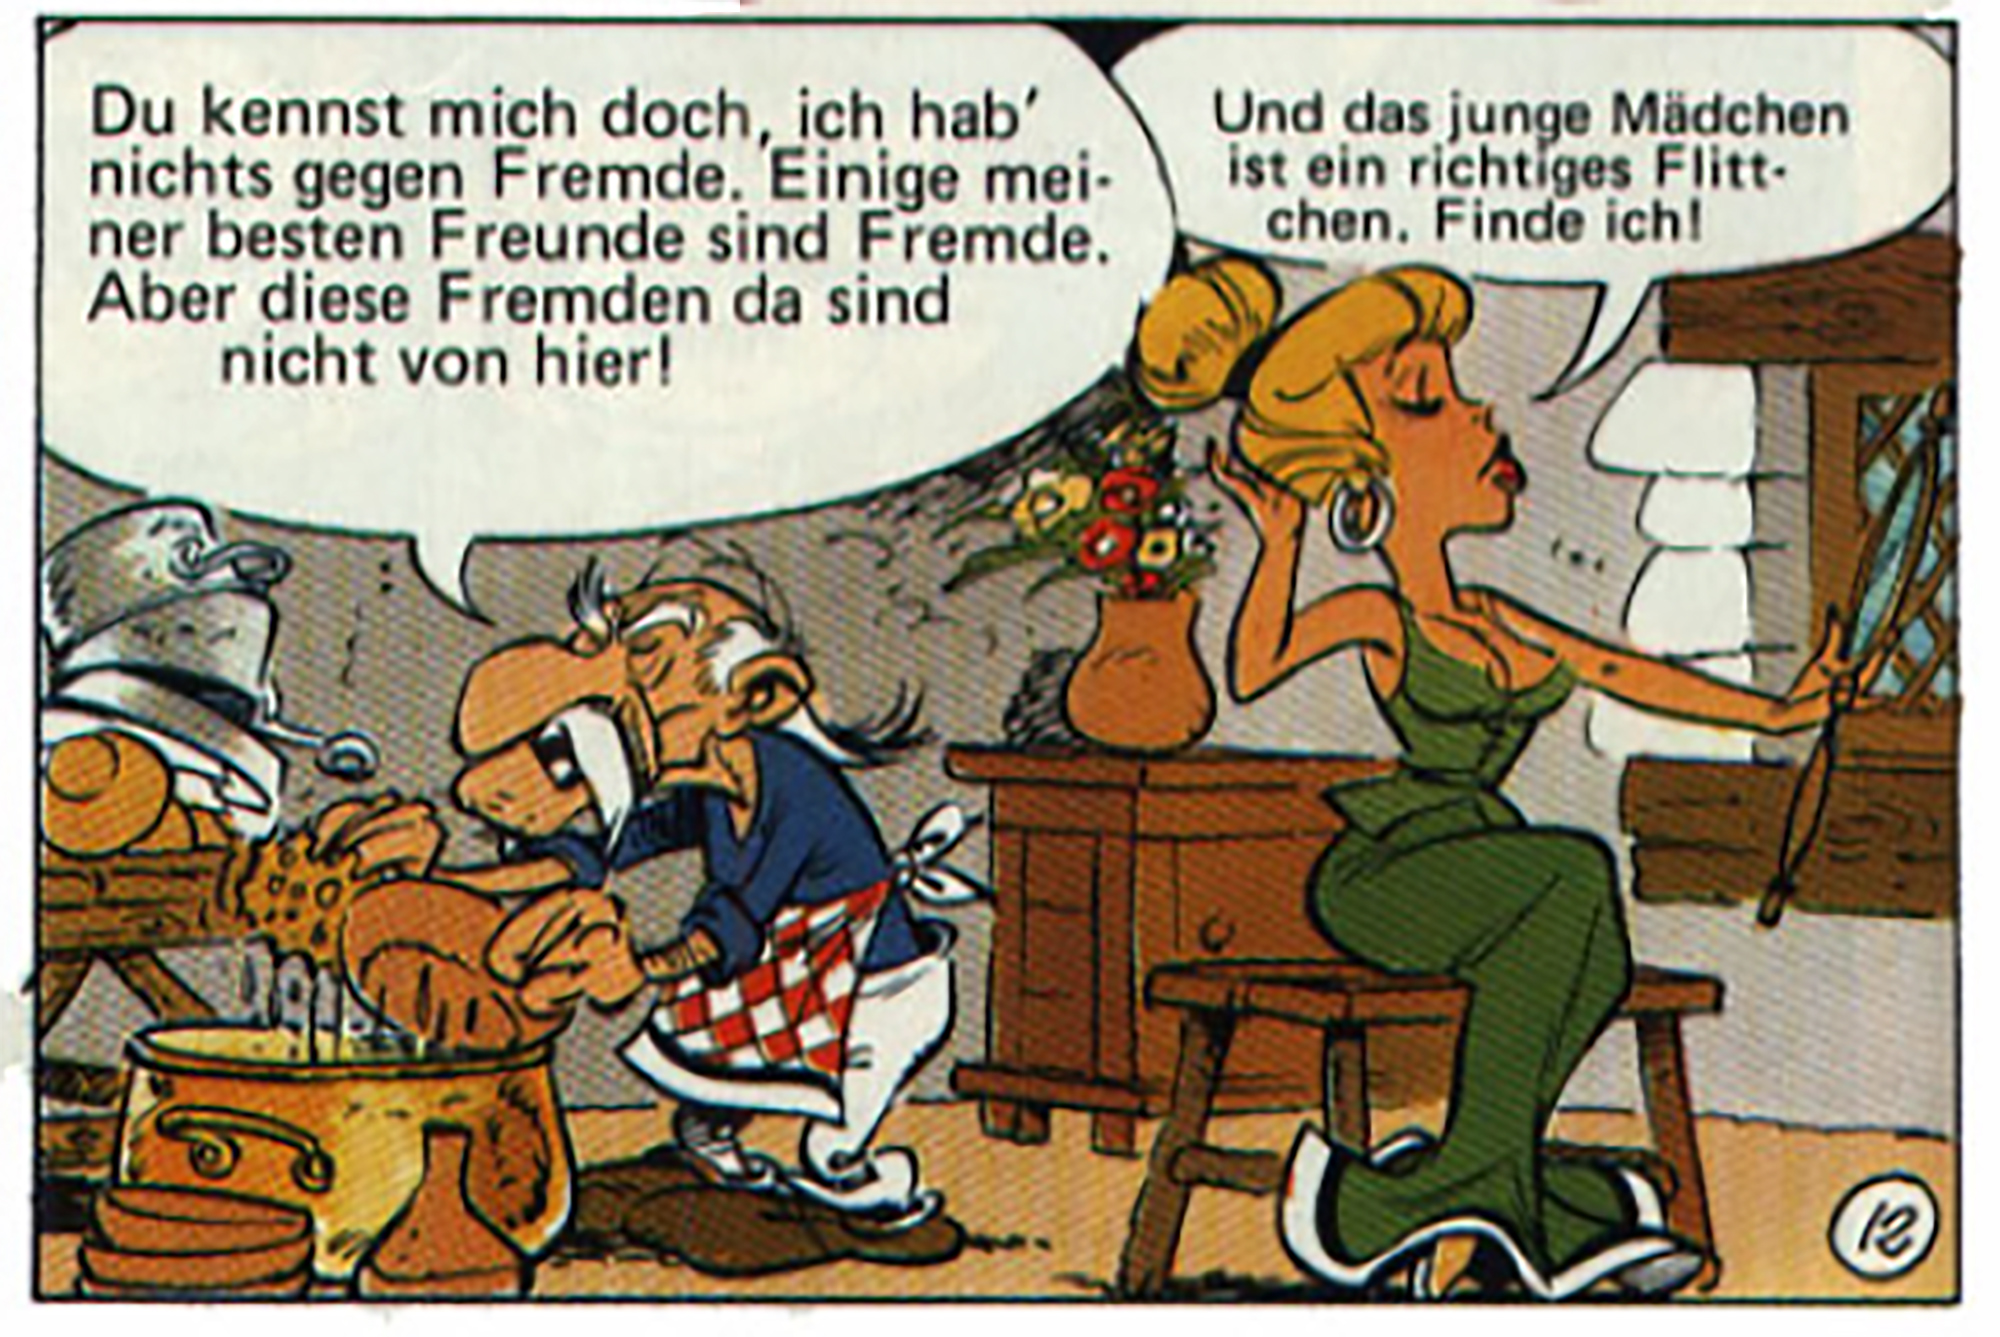 Bild aus Asterix-Heft, Band 21; ©DELTA Verlag, Stuttgart (dt. Fassung)